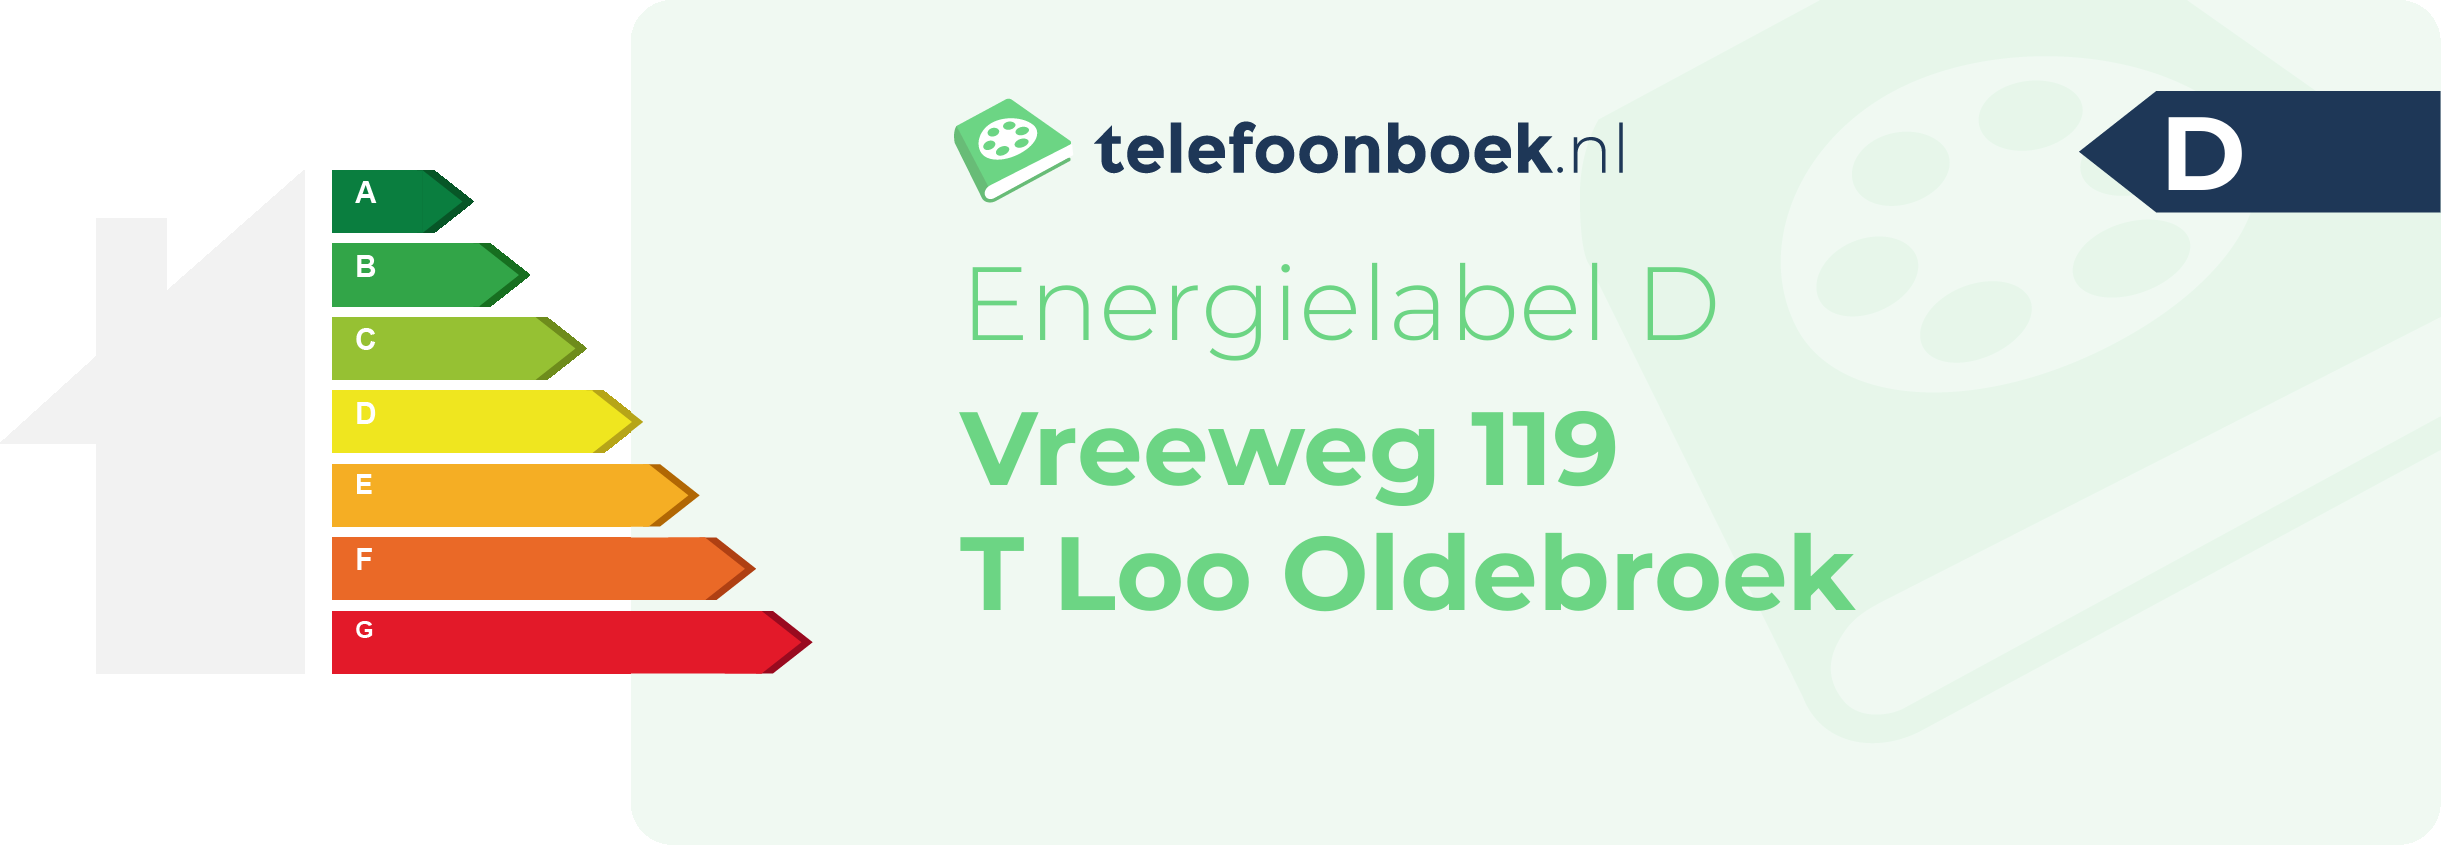 Energielabel Vreeweg 119 T Loo Oldebroek